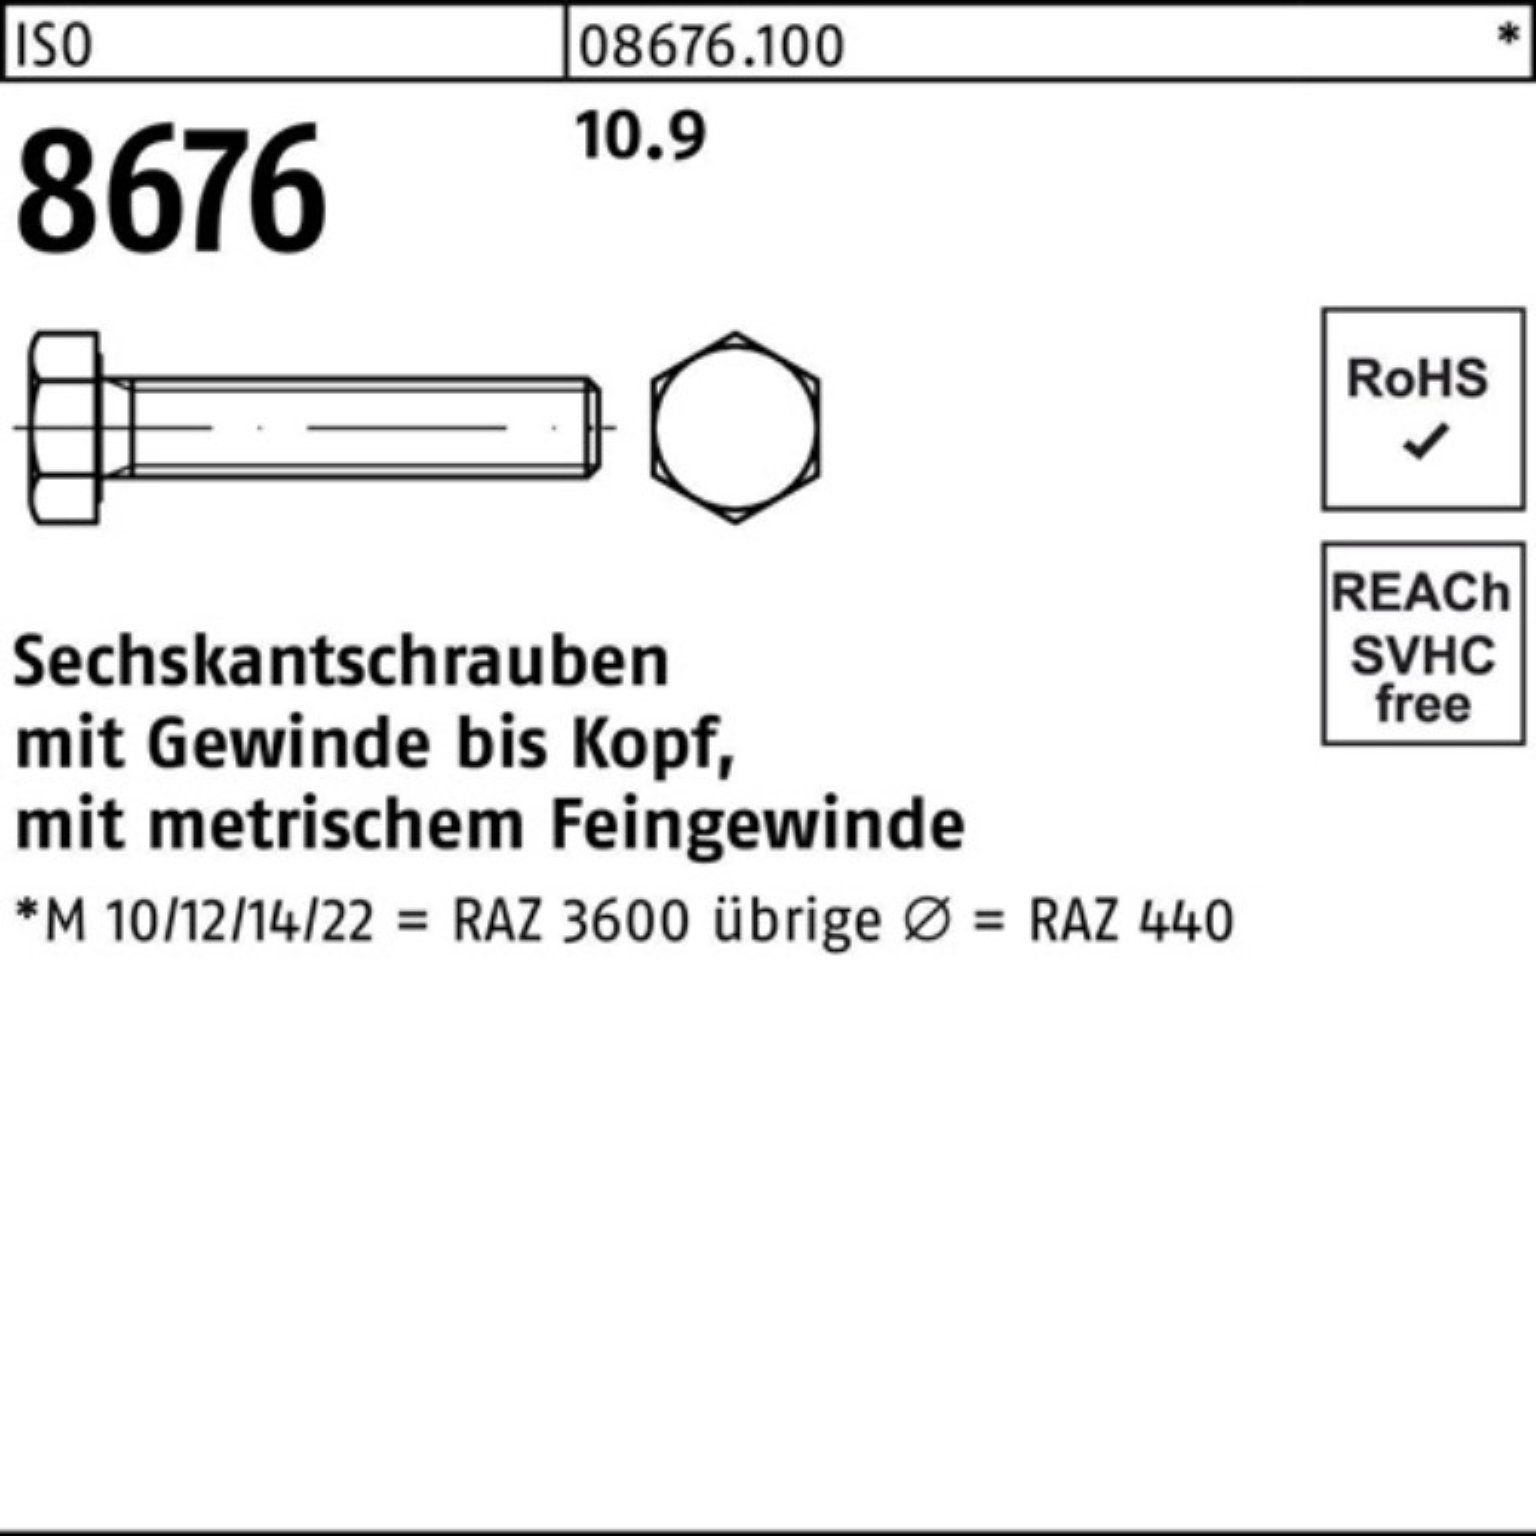 8676 Pack Reyher Sechskantschraube Sechskantschraube M20x1,5x 25 Stück 100er 10.9 VG 60 ISO IS